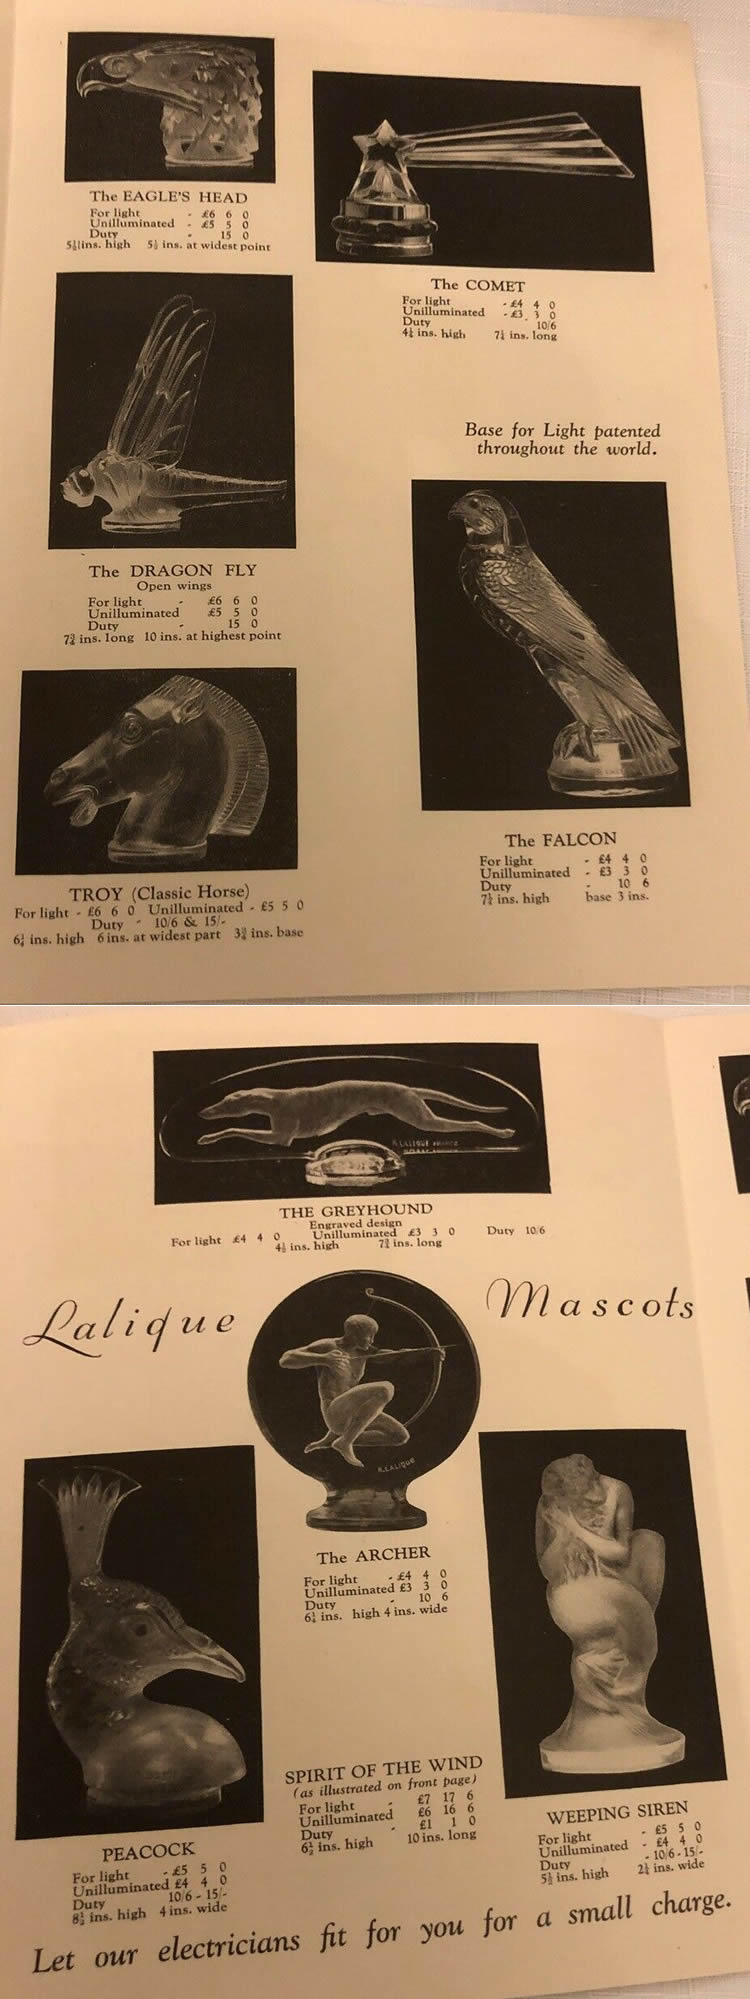 R. Lalique Breves Lalique Car Mascots Brochure 3 of 3